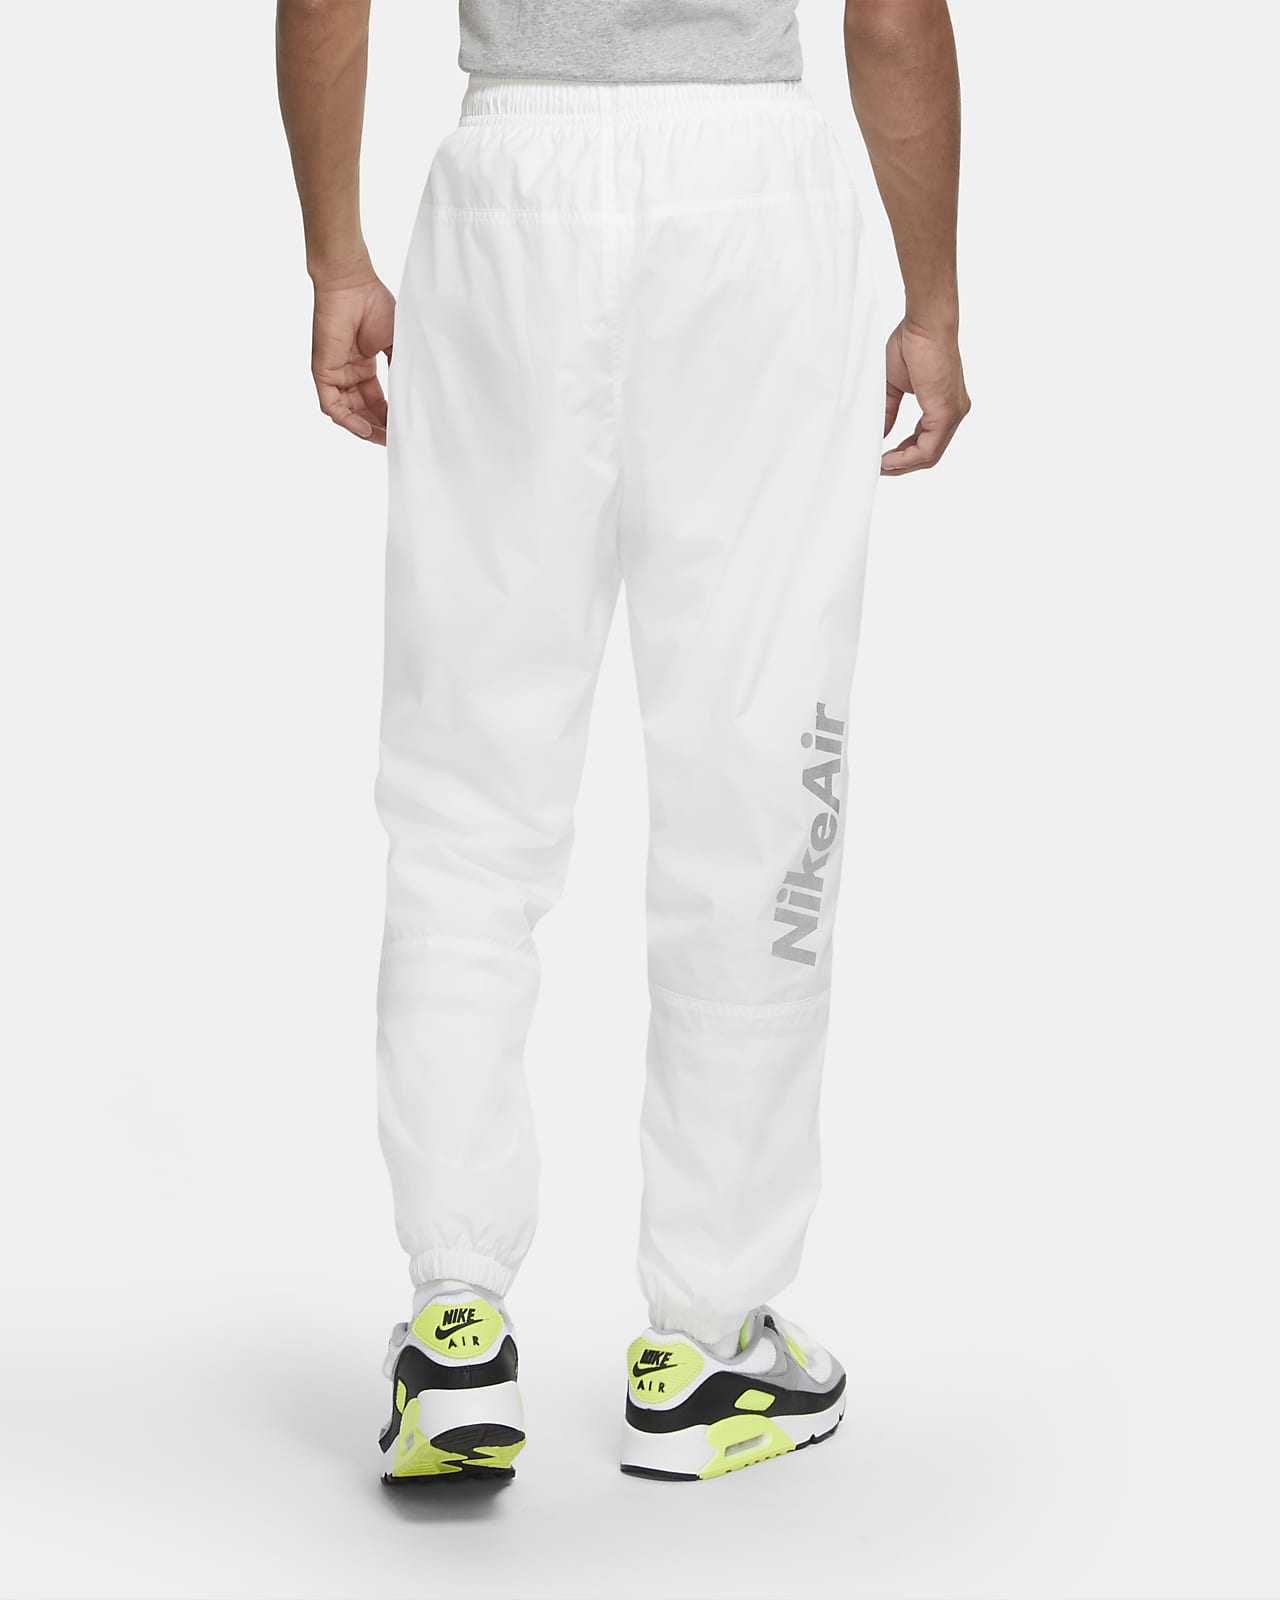 Pantalones de tejido Woven hombre Nike Air. Nike.com